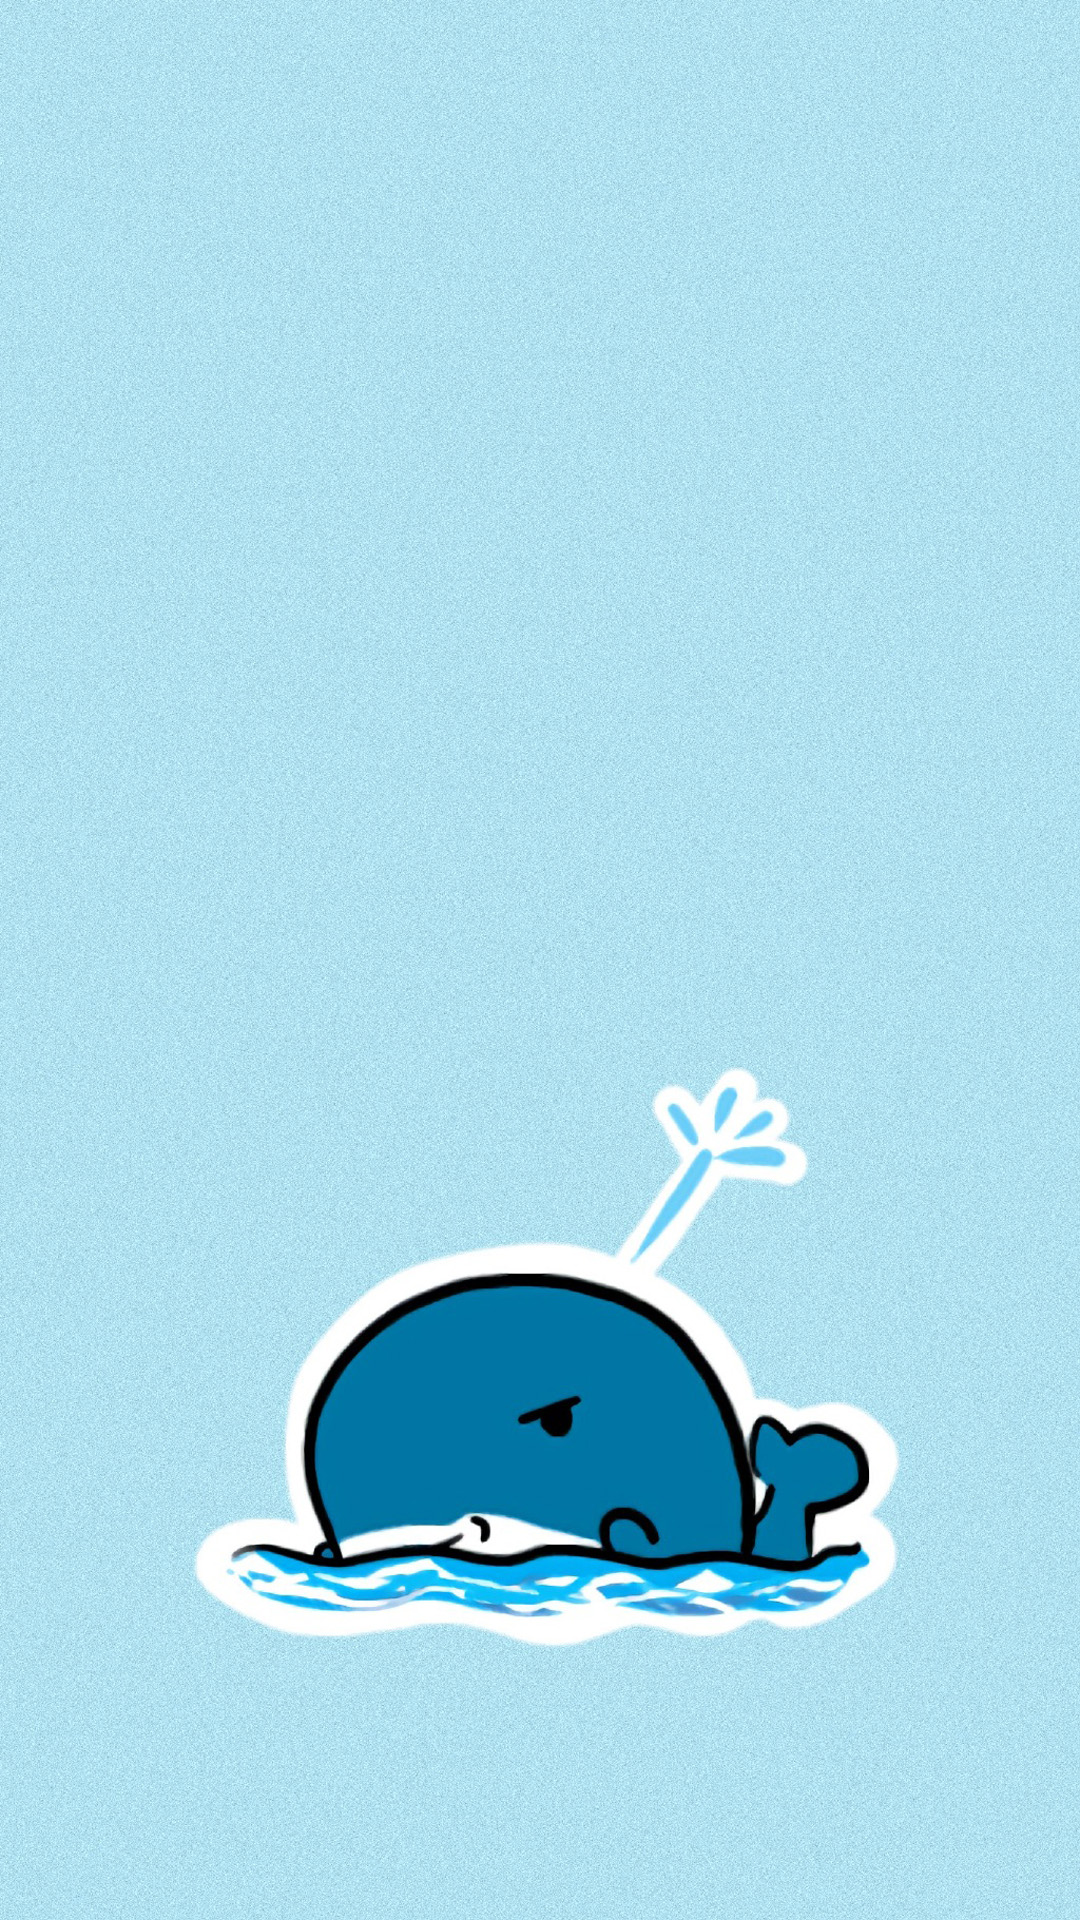 apk小游戏可爱卡通海豚图片手机壁纸安卓手机壁纸高清截图7